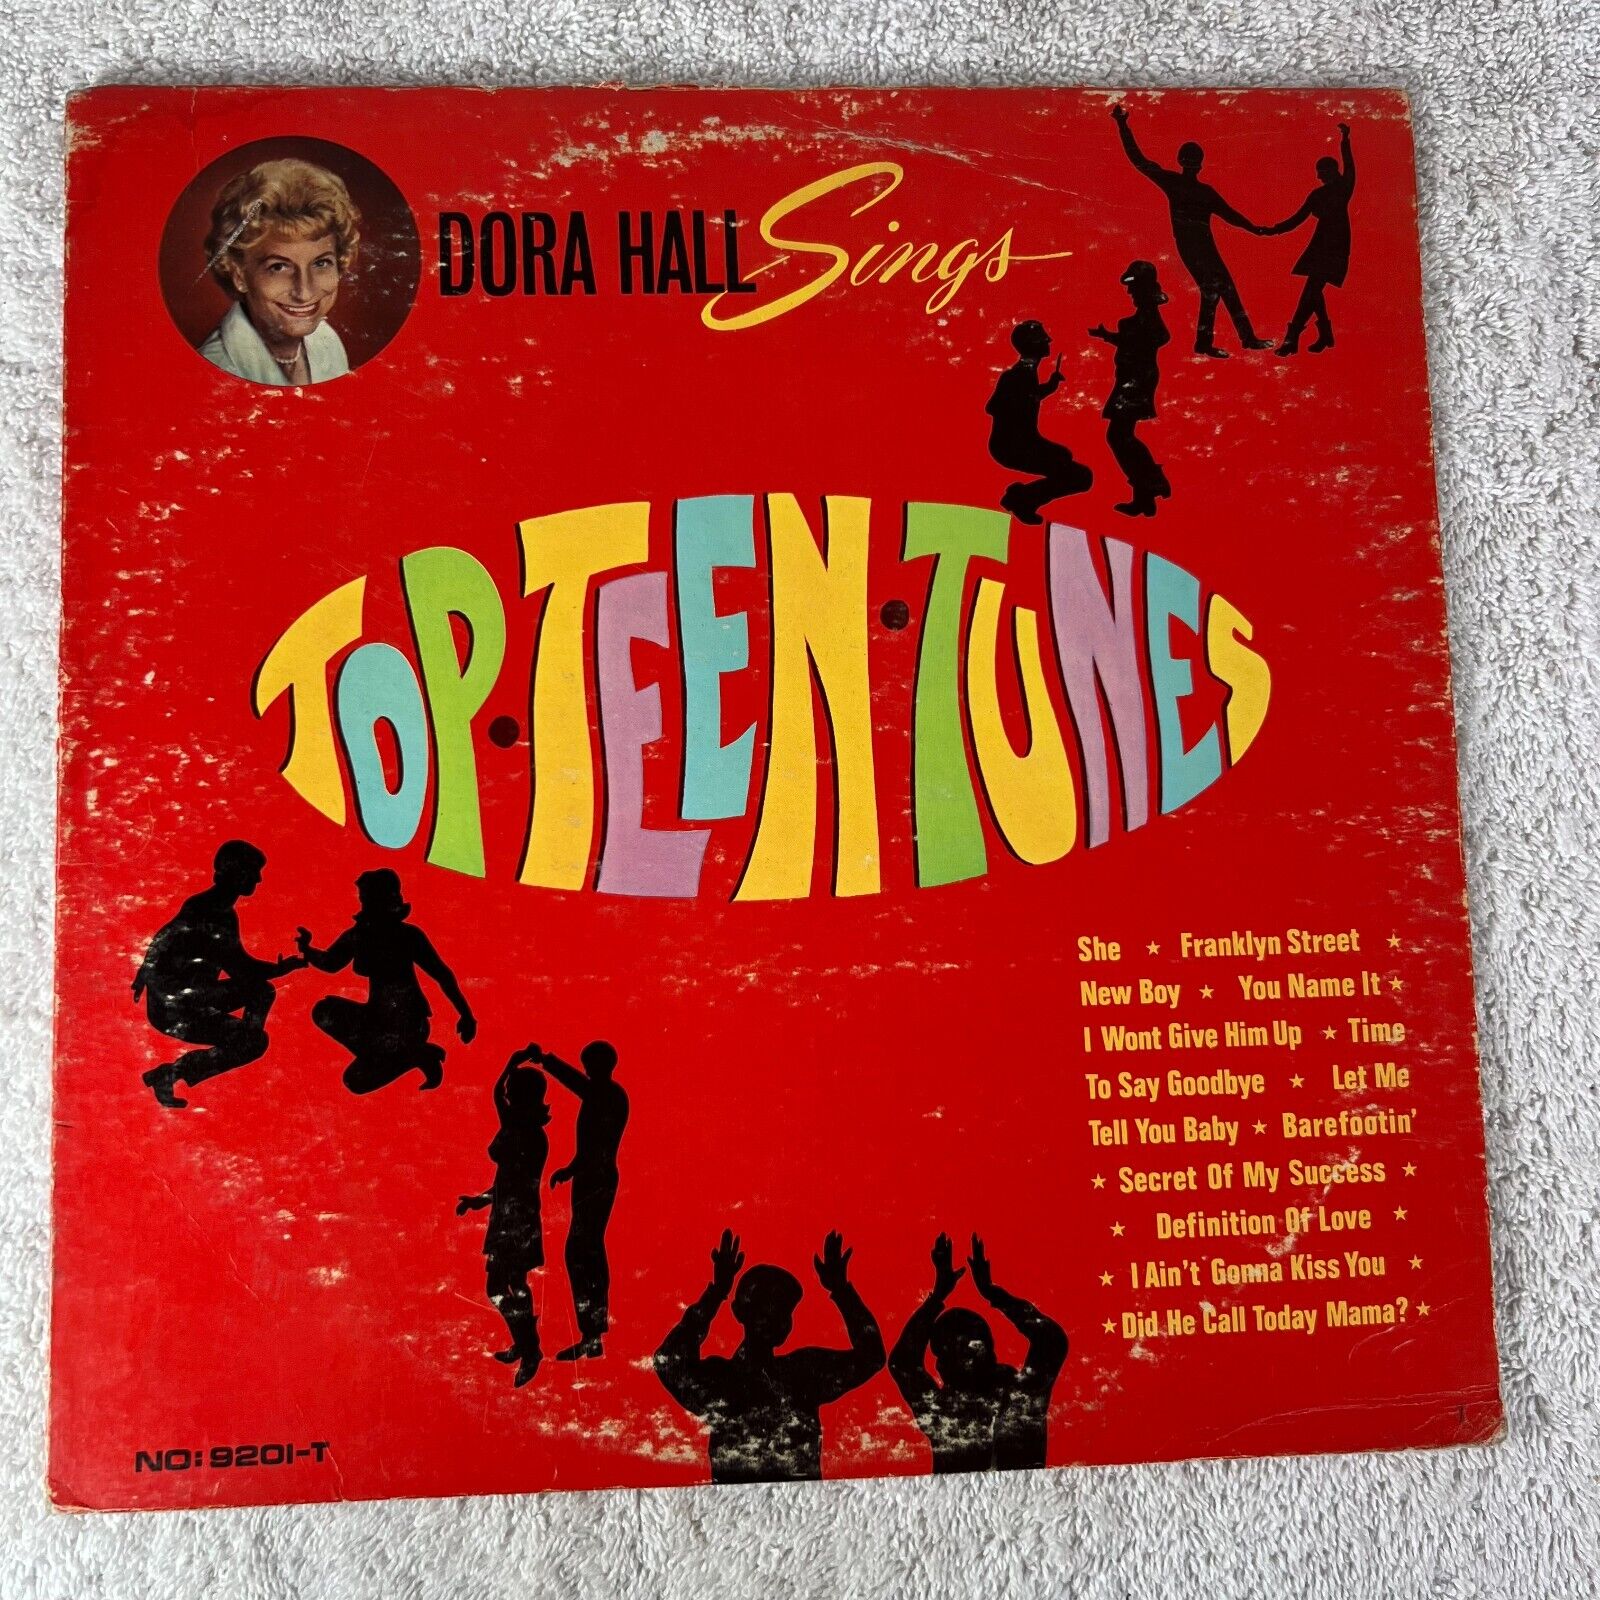 DORA HALL SINGS TOP TEEN TUNES Vinyl LP 9201-T